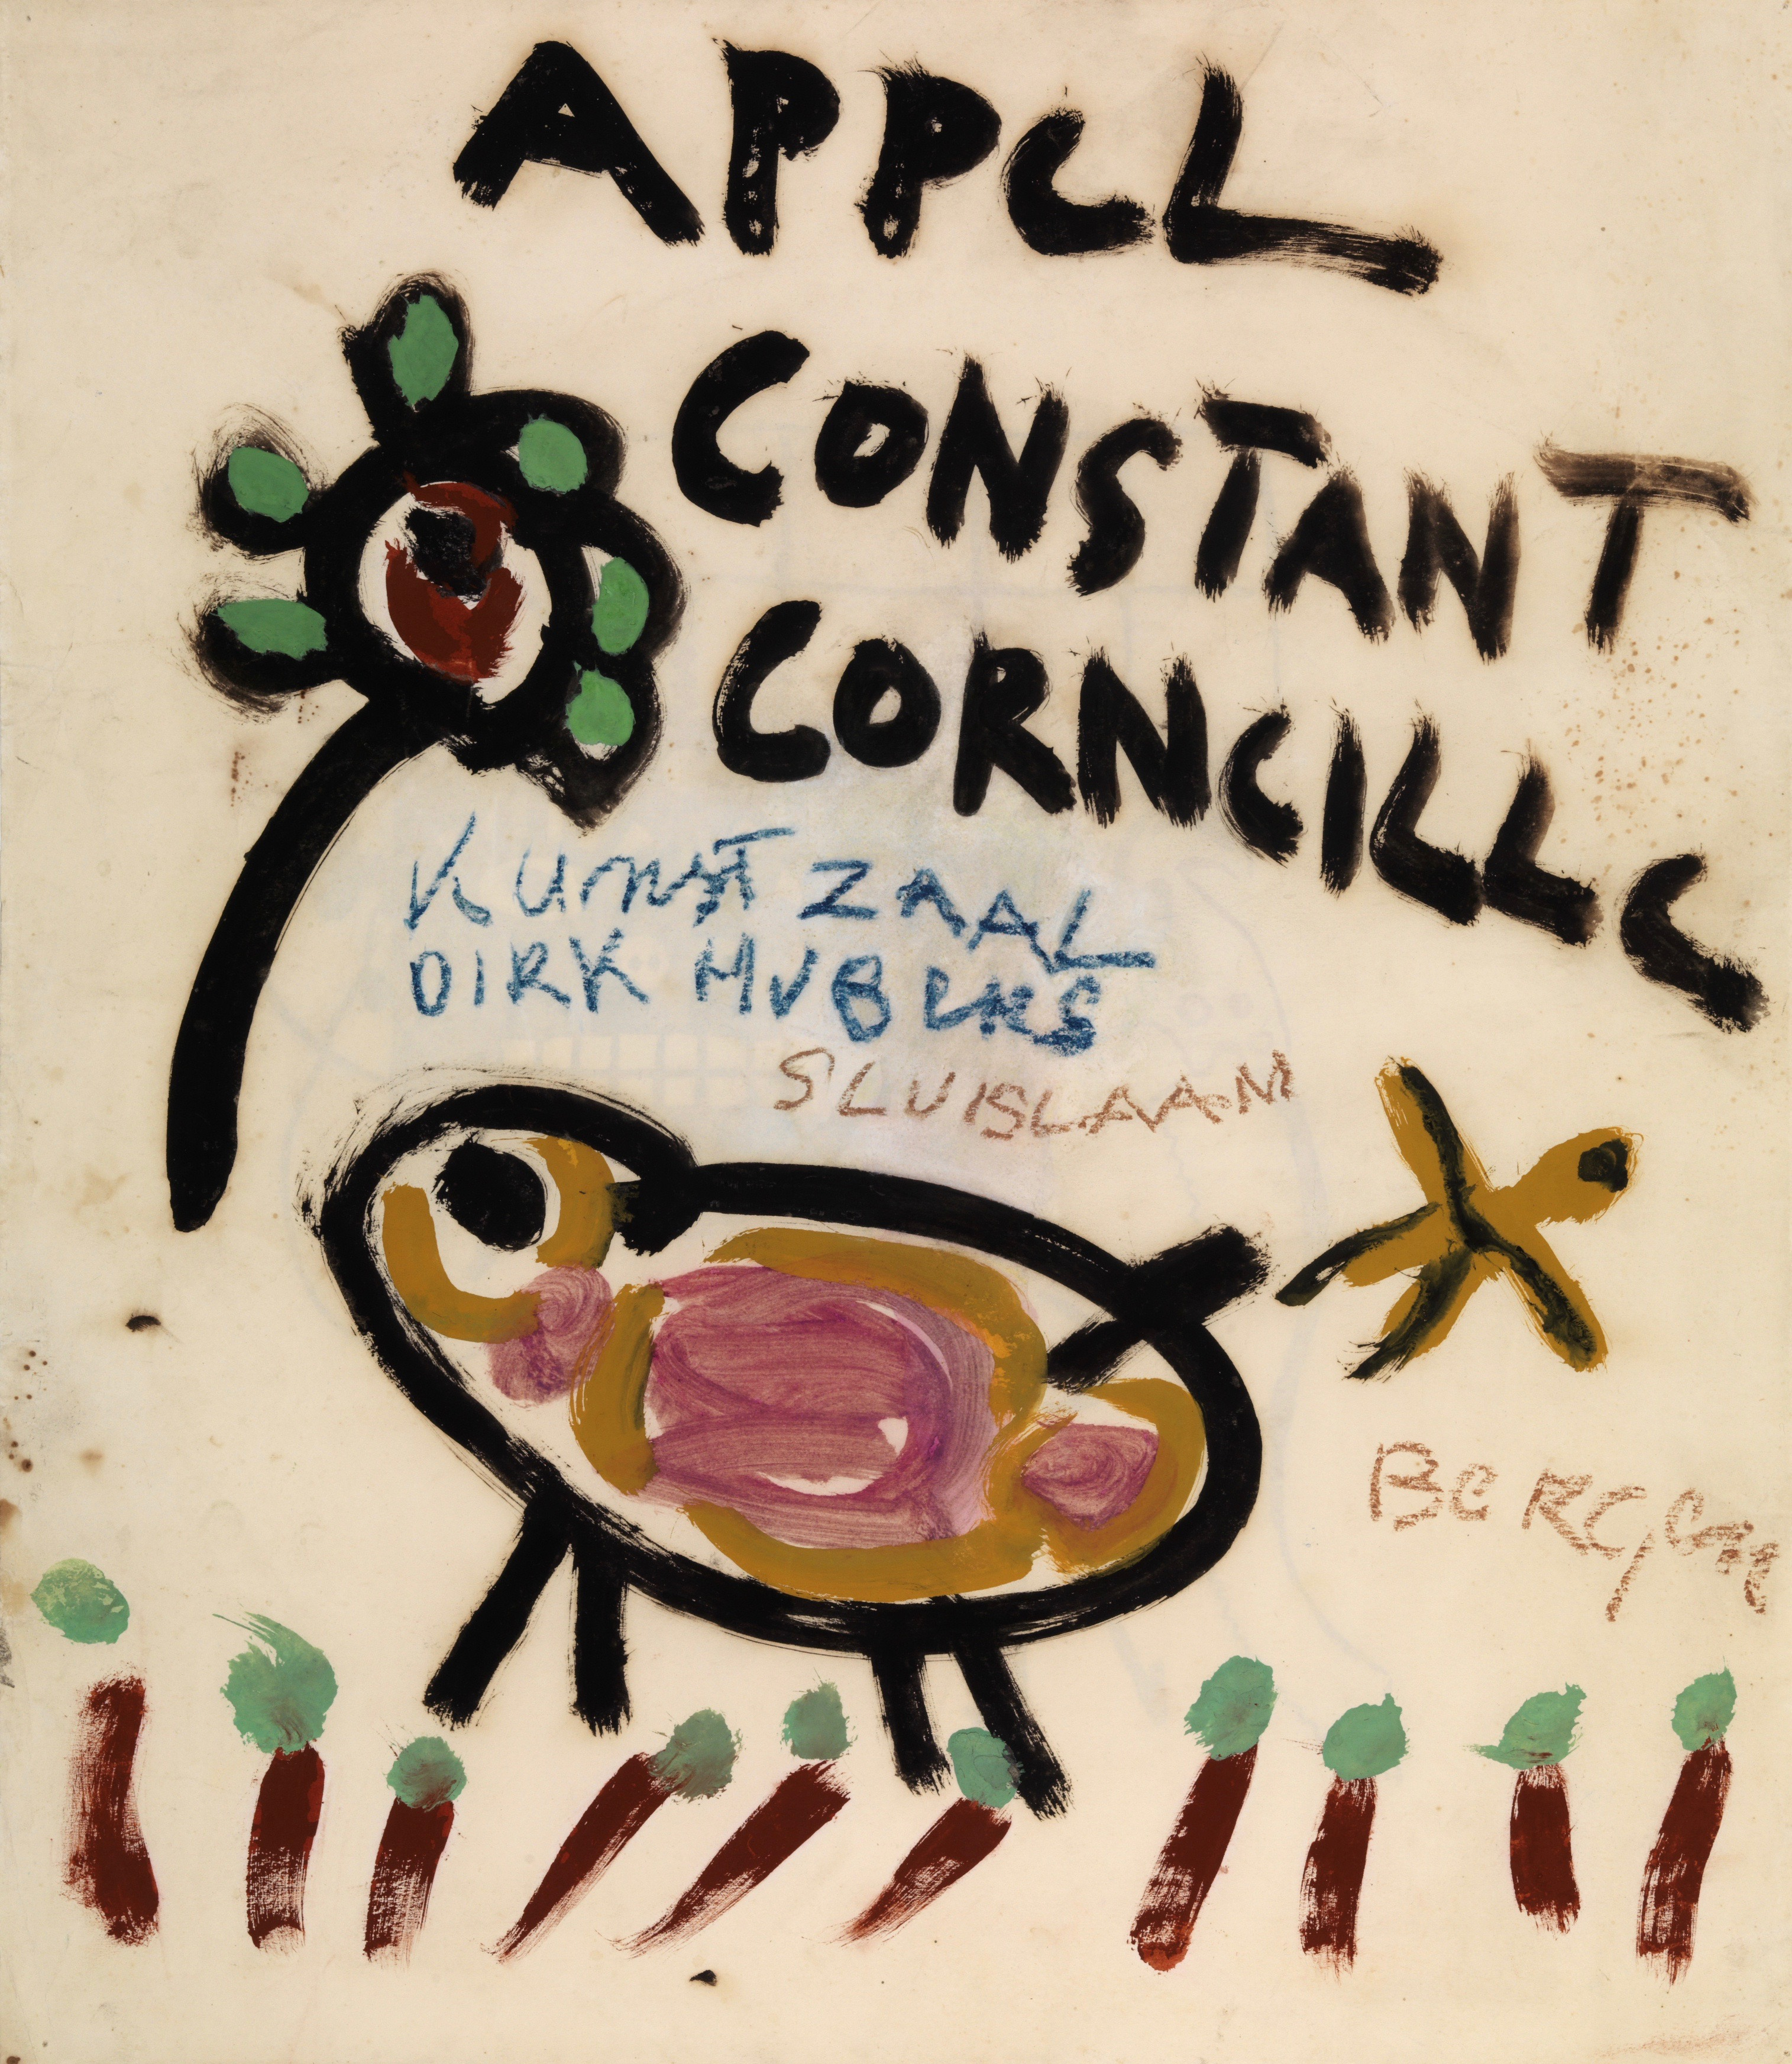 Appel Constant Corneille | Kunstzaal Hubers, 1949-3